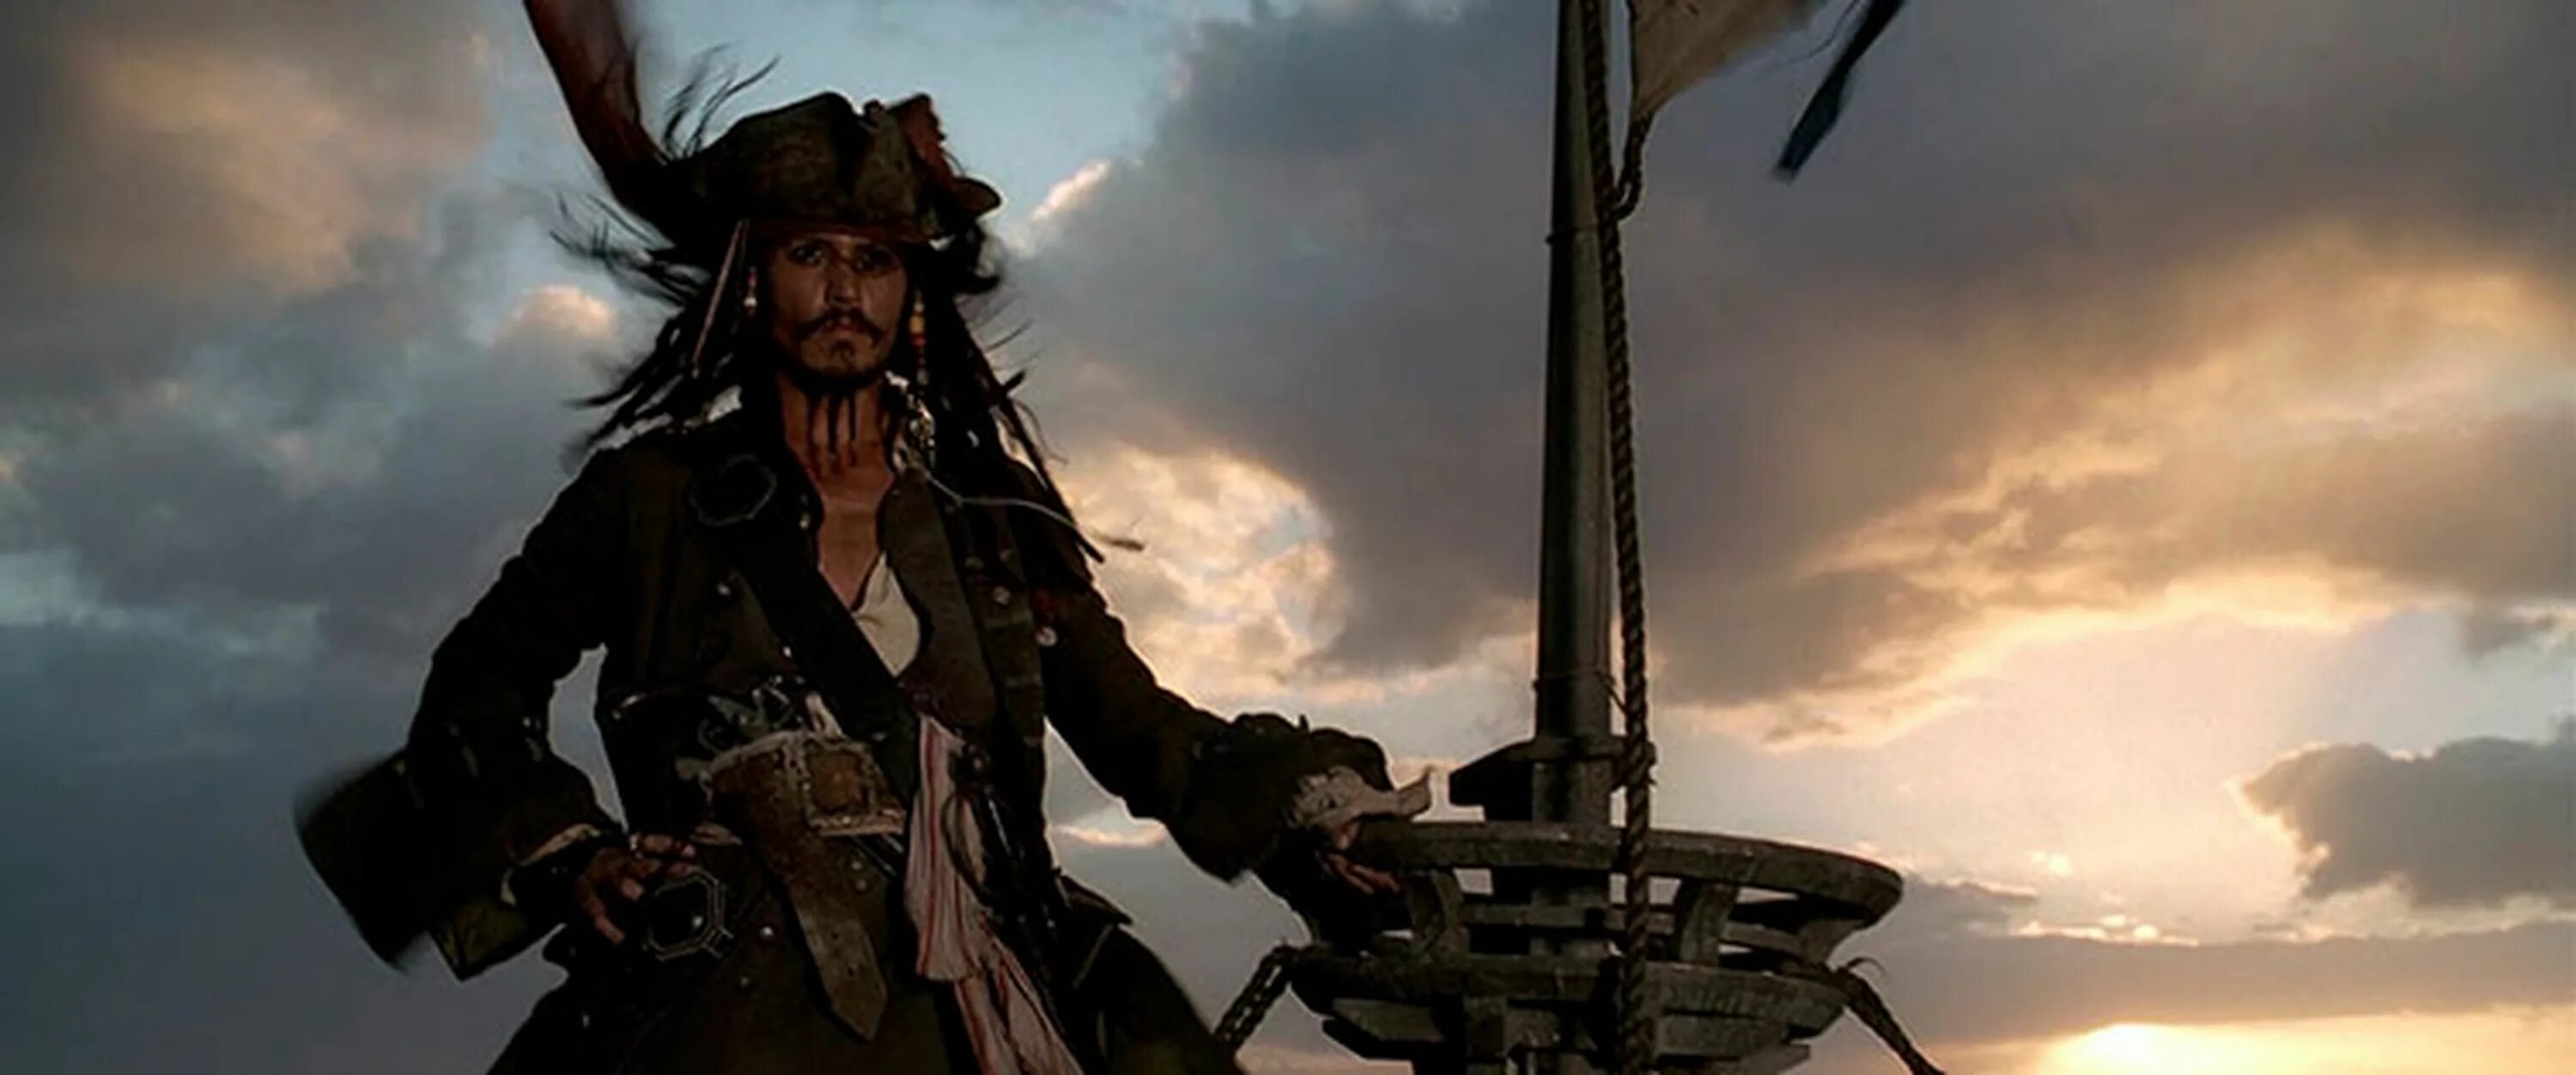 Зубарев смотрит пираты 1. Пираты Карибского моря Капитан Джек Воробей. Джонни Депп пираты Карибского моря. Капитан Джек Воробей черная Жемчужина. Пираты Карибского моря 1 Джек Воробей.